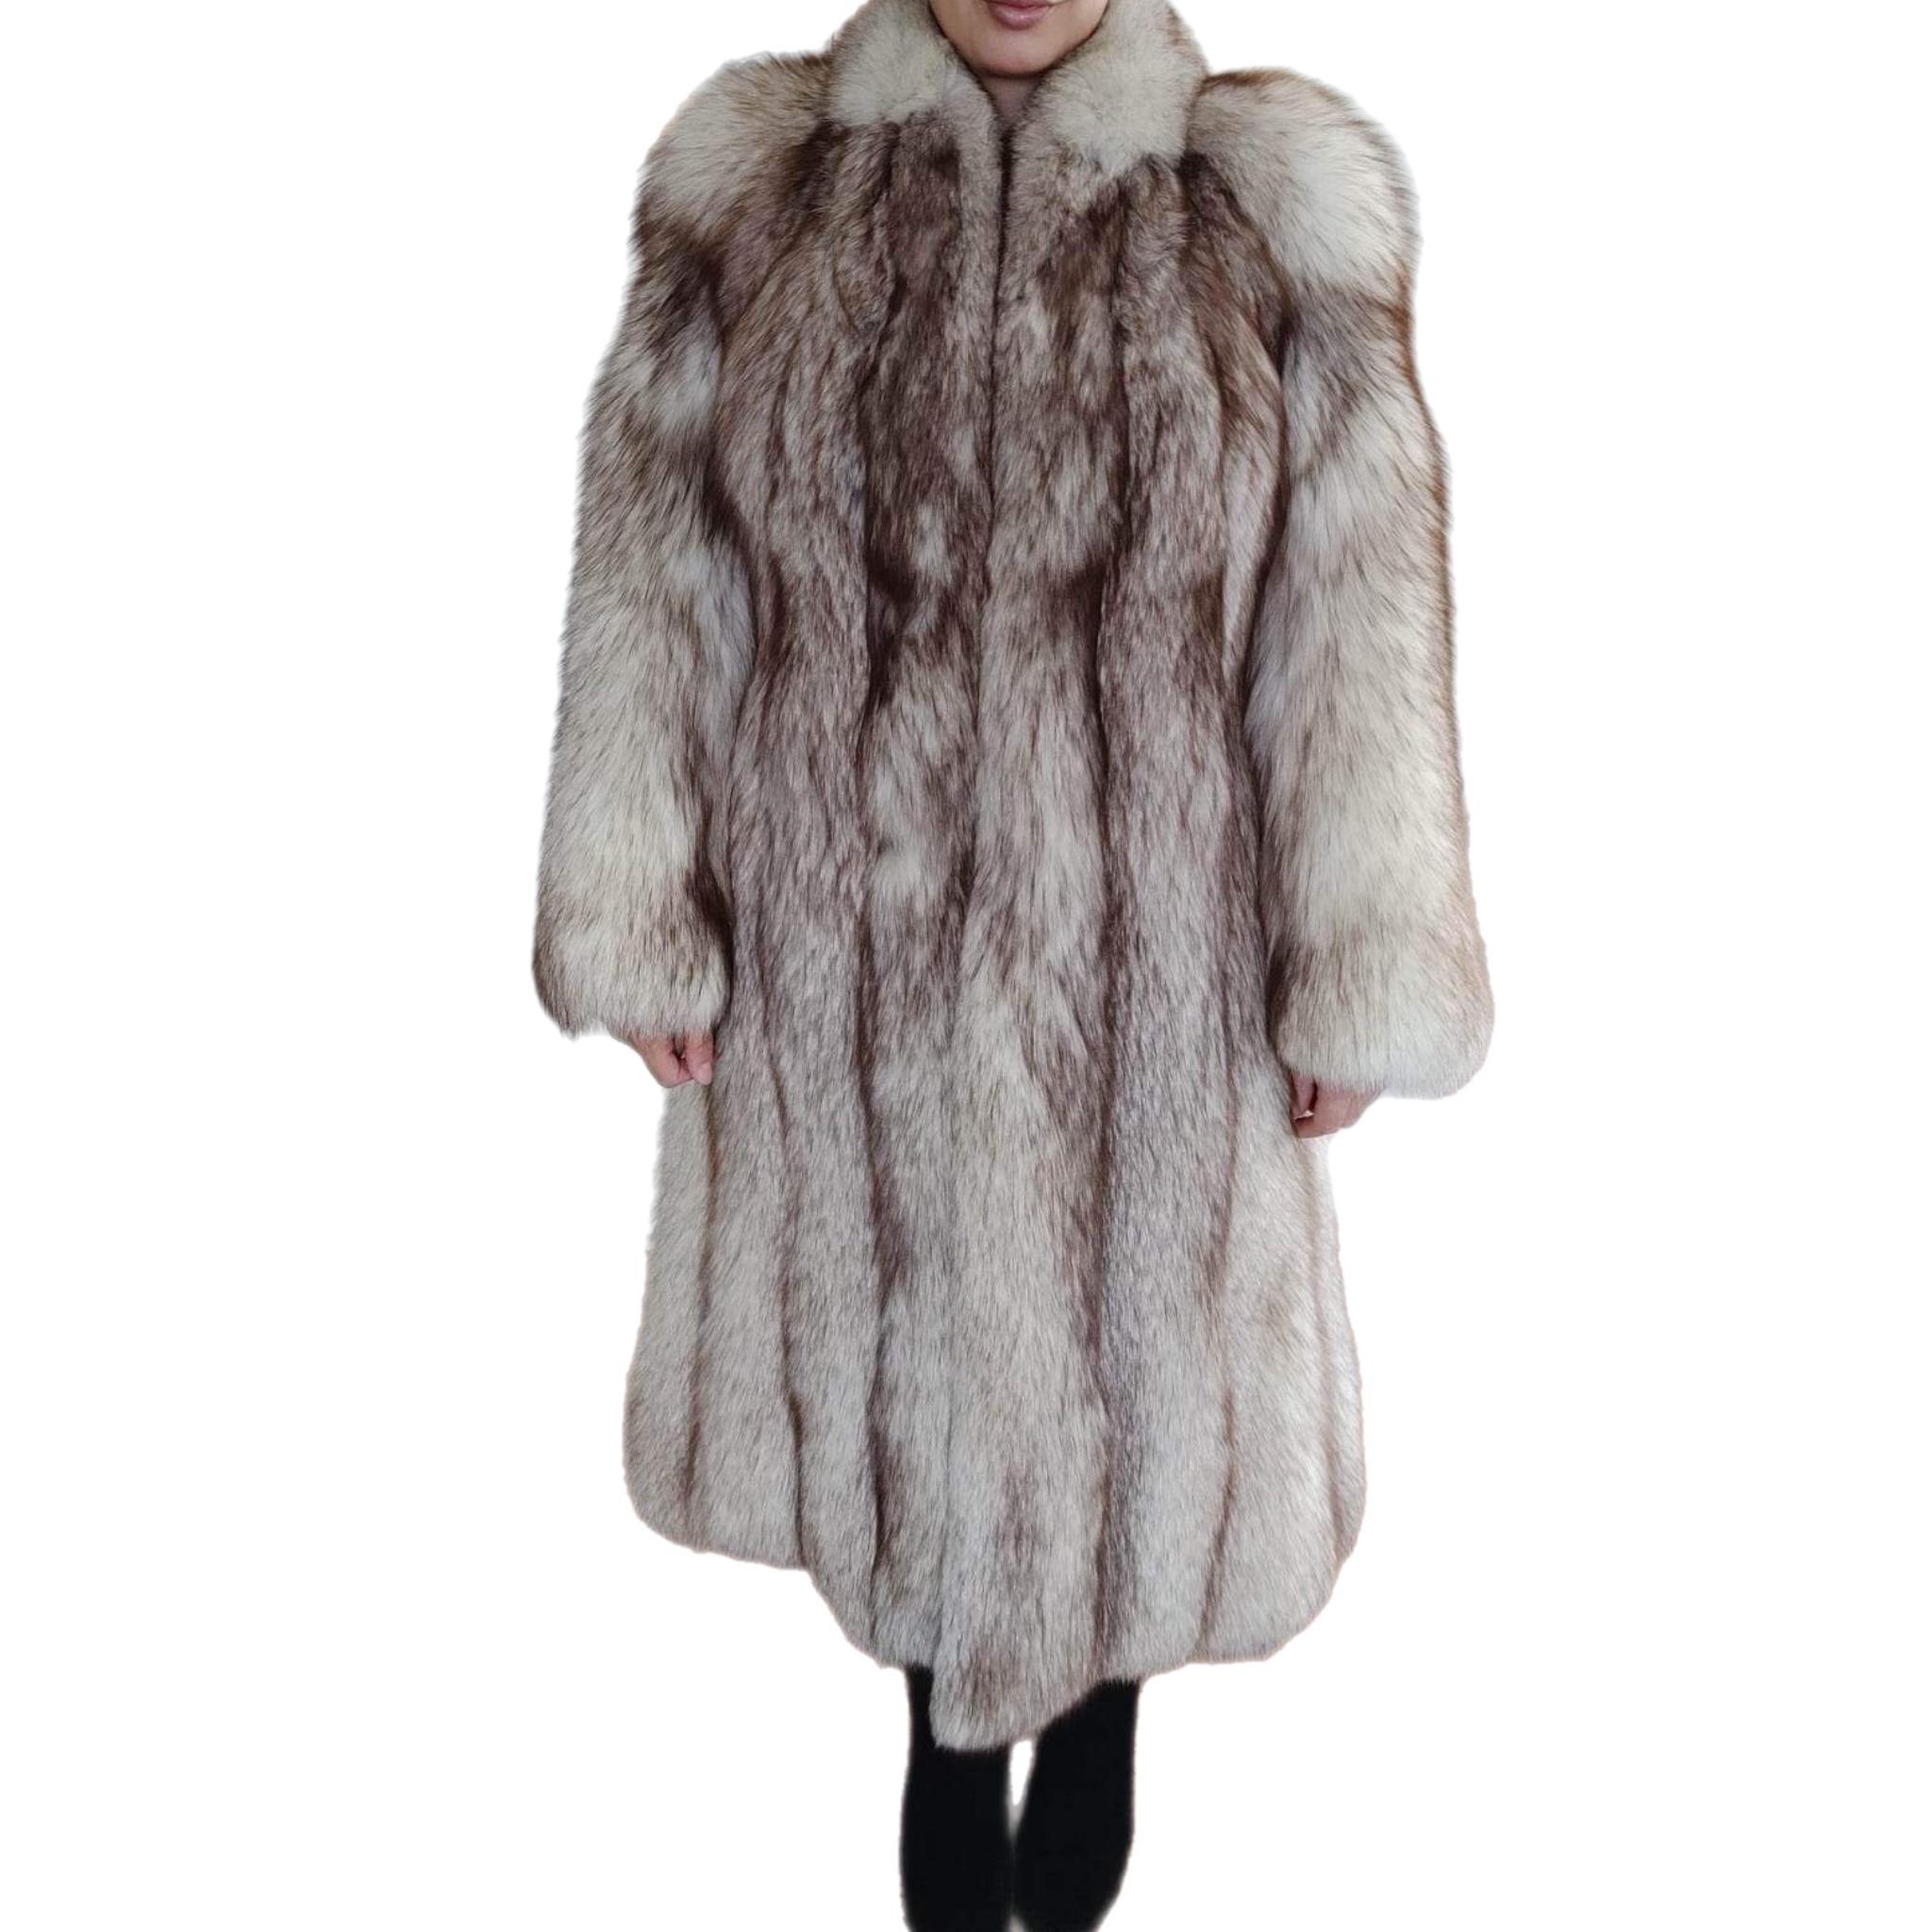 Manteau en fourrure de renard norvégien (Taille 8 -S)

Mesures :
-Taille 8
-Longueur 37